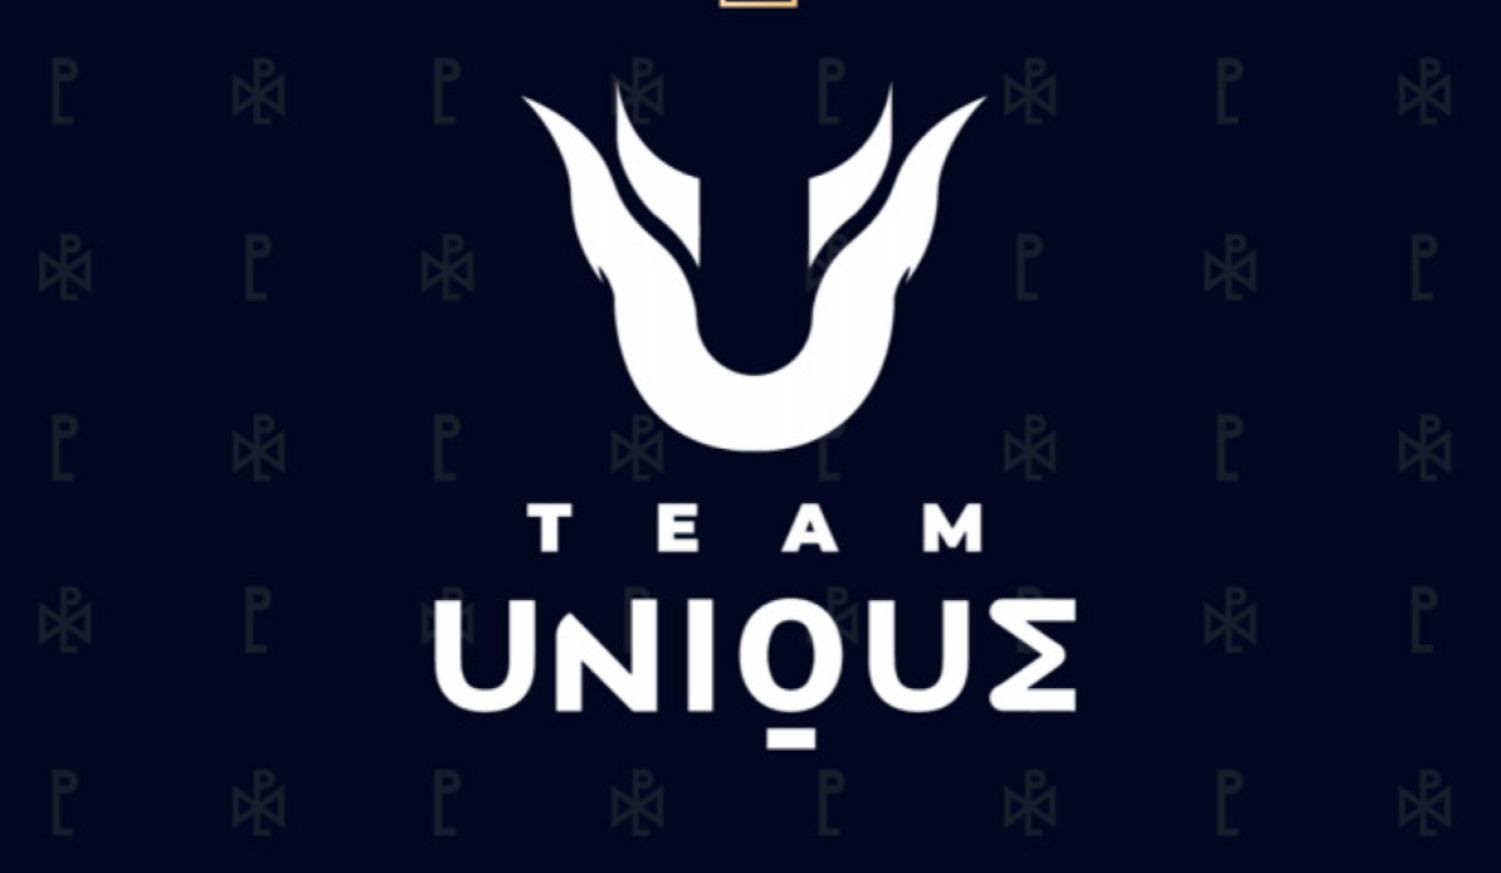 Team Unique представила обновлённый состав по Dota 2